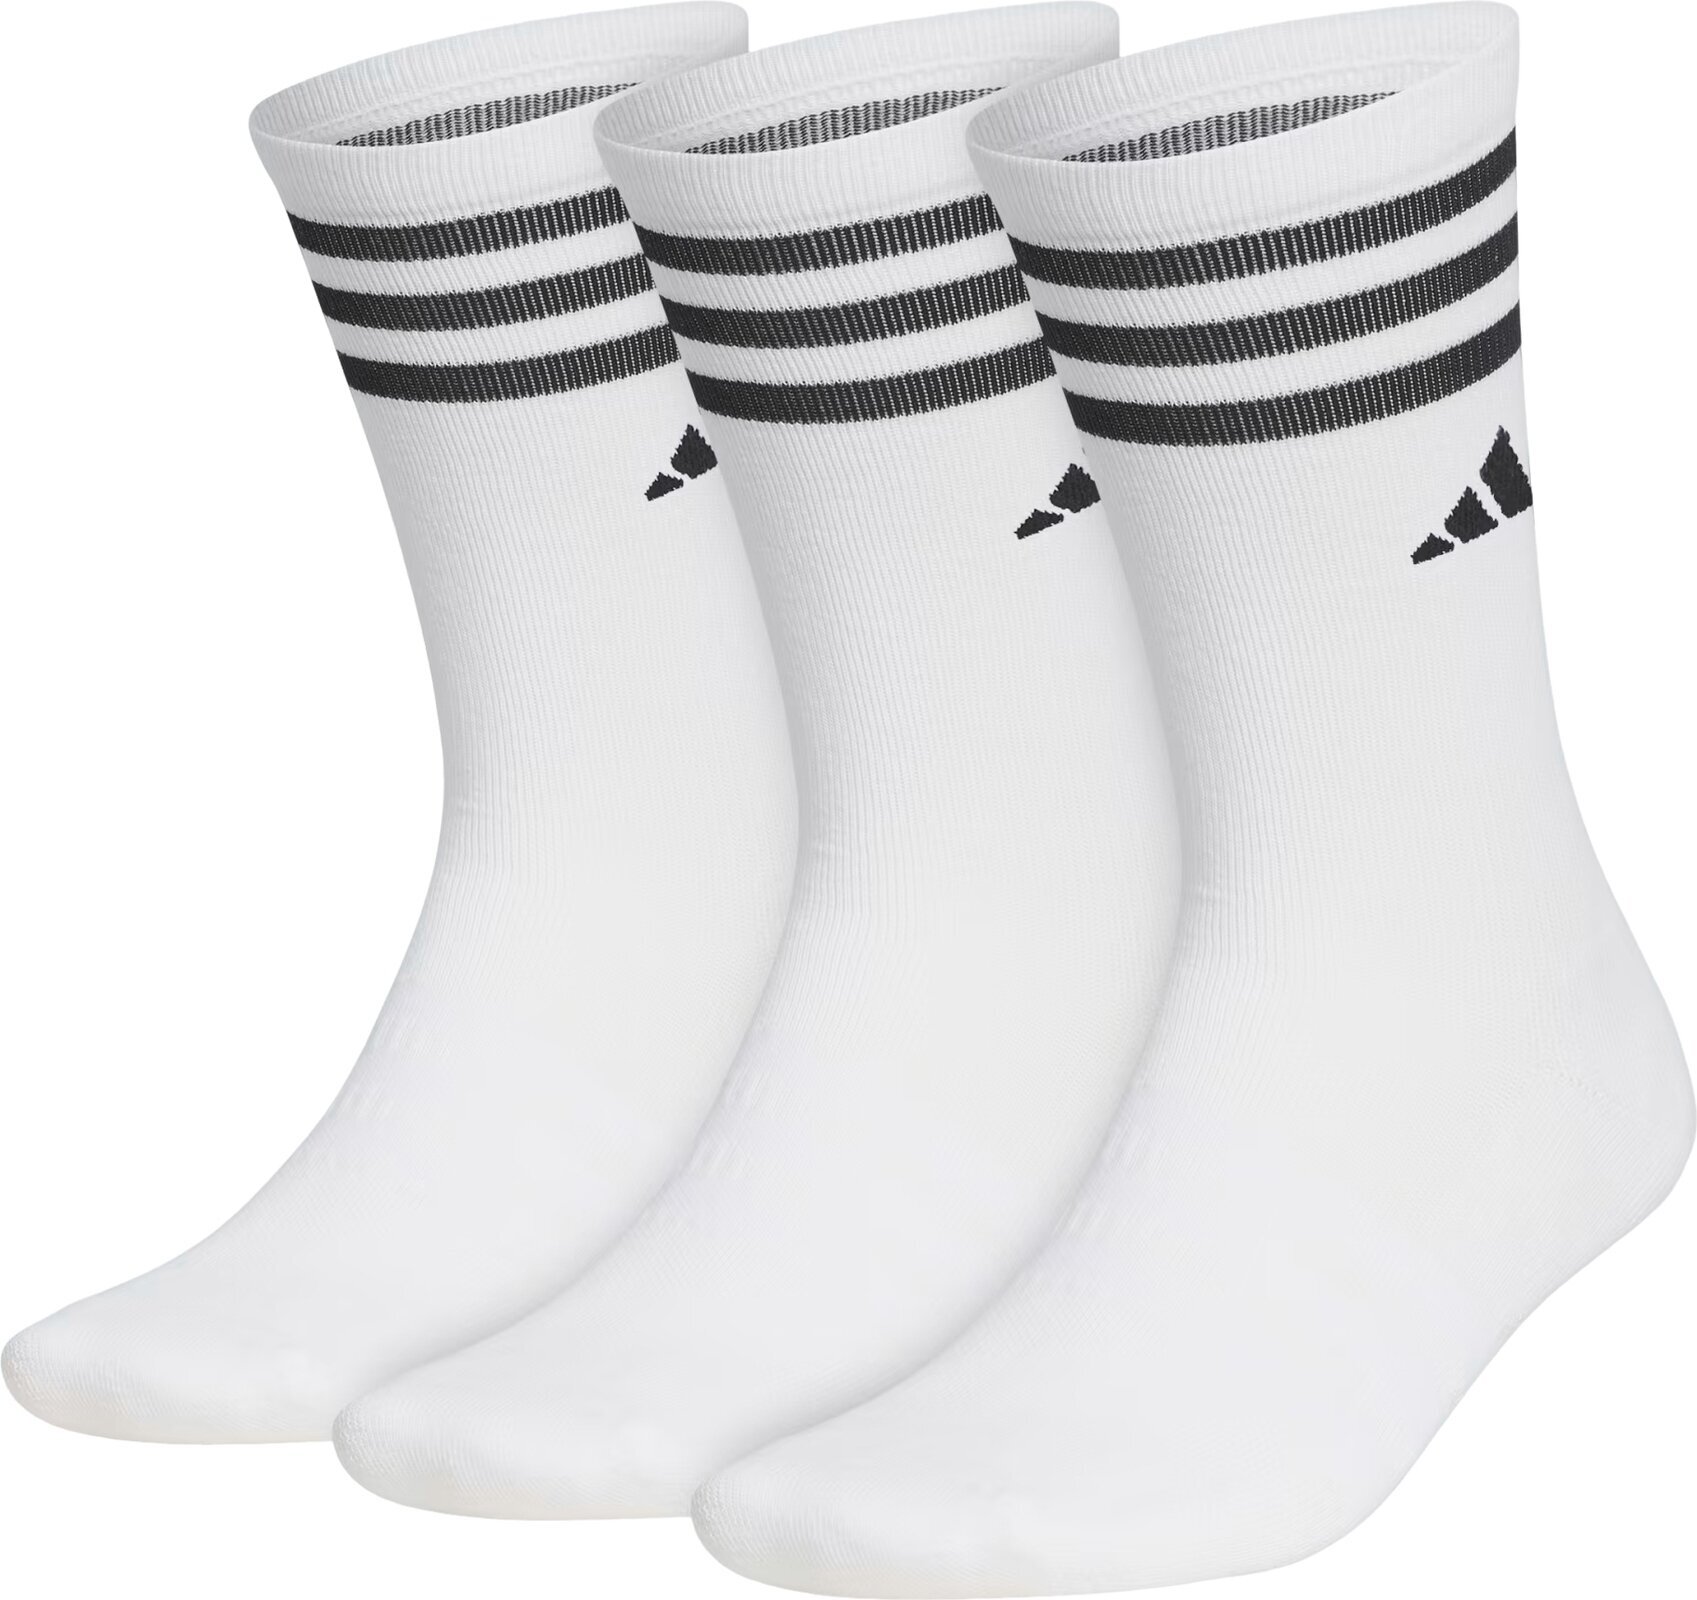 Skarpety Adidas Crew Golf Socks 3-Pairs Skarpety White 43-47